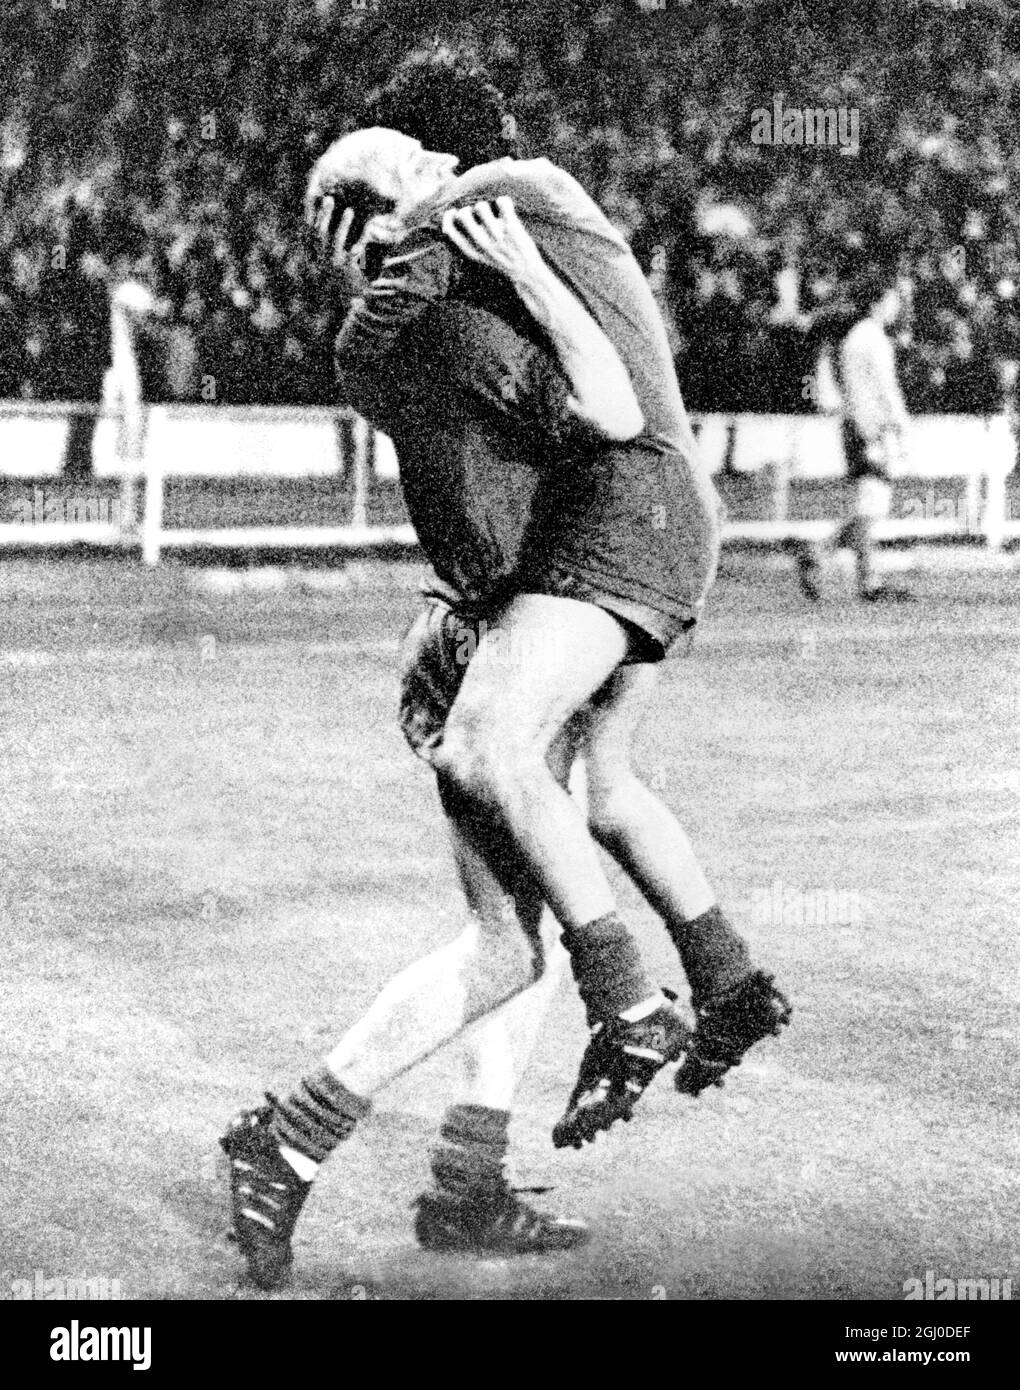 Finale de la coupe d'Europe 1968 Manchester United v Benfica George Best et Bobby Charlton partagent leurs clubs le plus grand moment après que Manchester United a battu Benfica à la finale de la coupe d'Europe au stade Wembley par quatre buts à un. 29 mai 1968. Banque D'Images